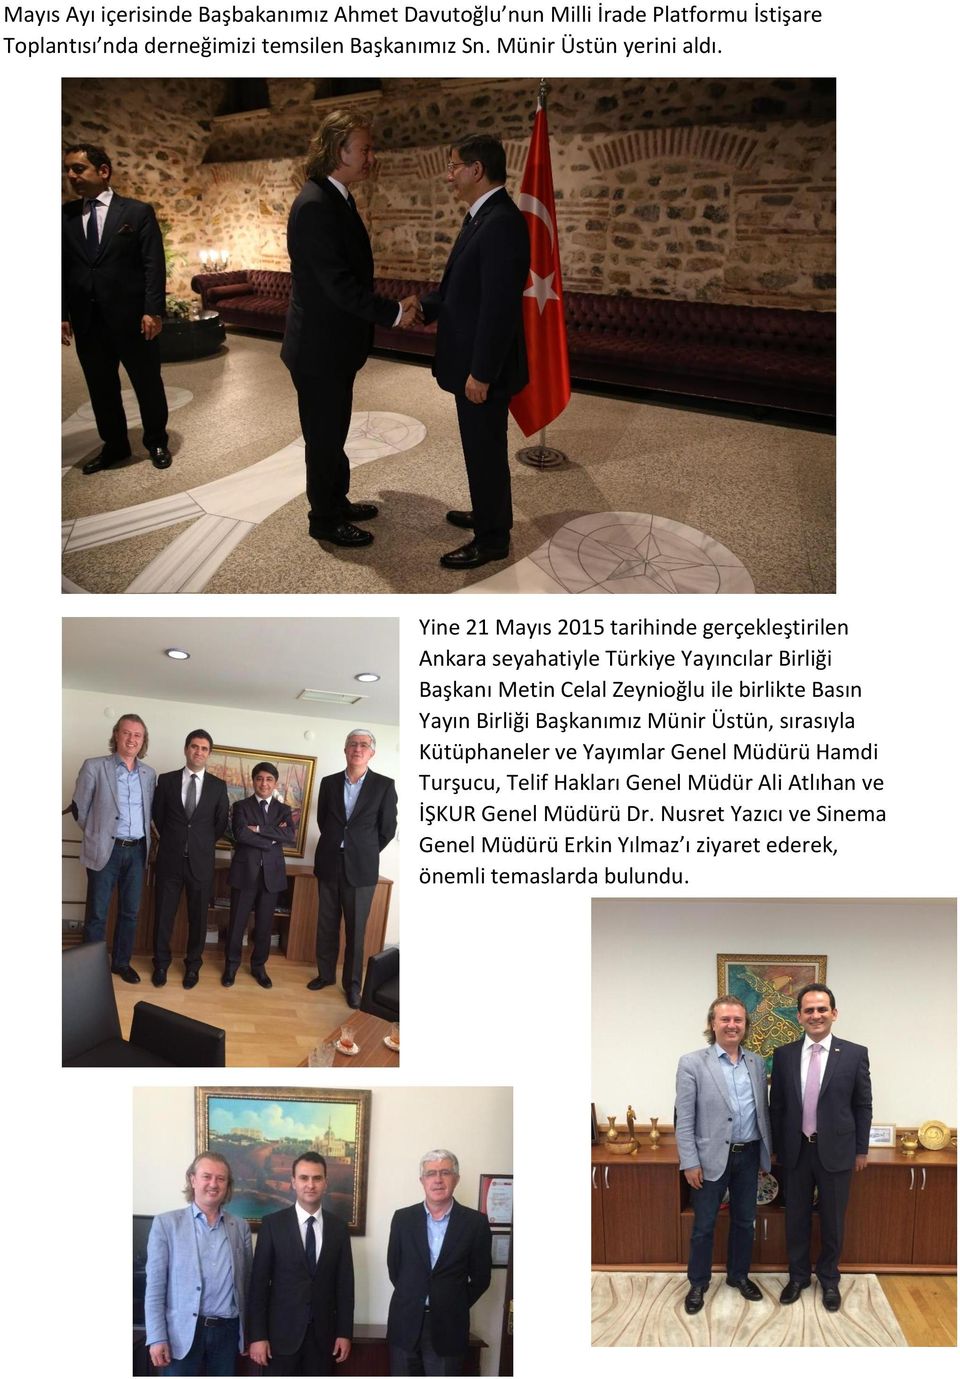 Yine 21 Mayıs 2015 tarihinde gerçekleştirilen Ankara seyahatiyle Türkiye Yayıncılar Birliği Başkanı Metin Celal Zeynioğlu ile birlikte Basın